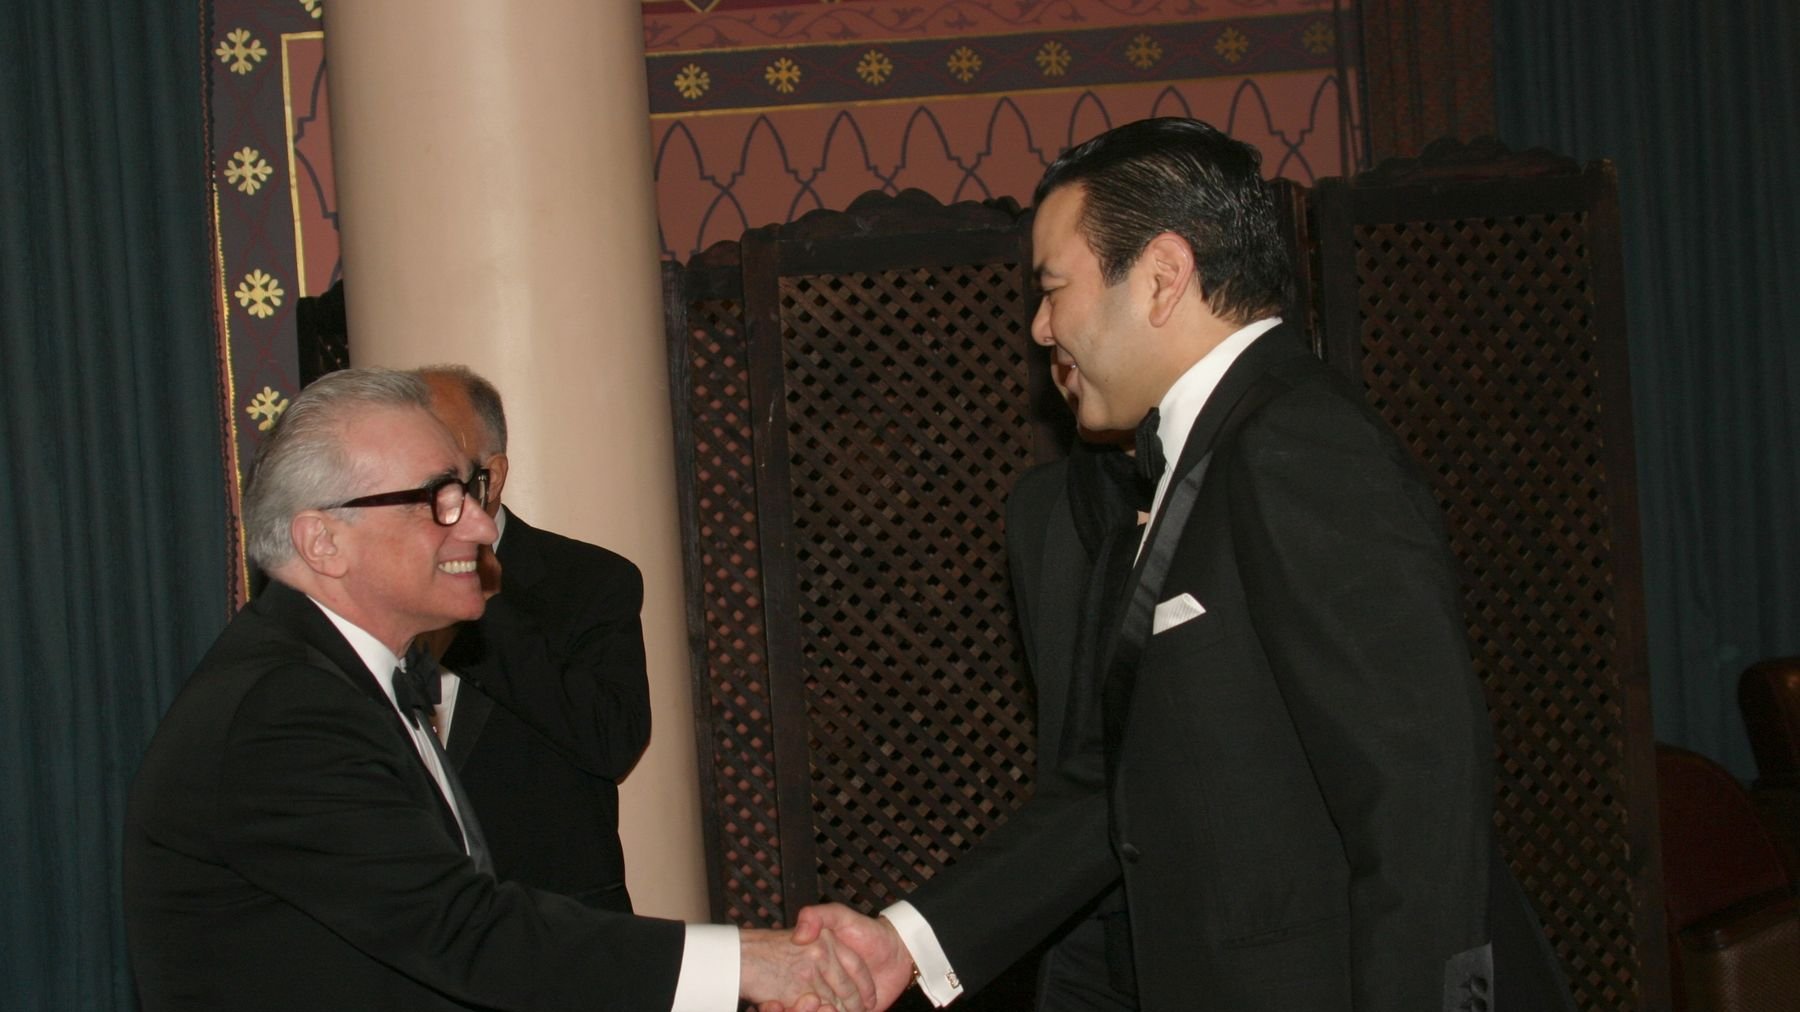 Le réalisateur de chefs d'oeuvre inoubliables du cinéma reçu par le prince Moulay Rachid pour un diner royal.
